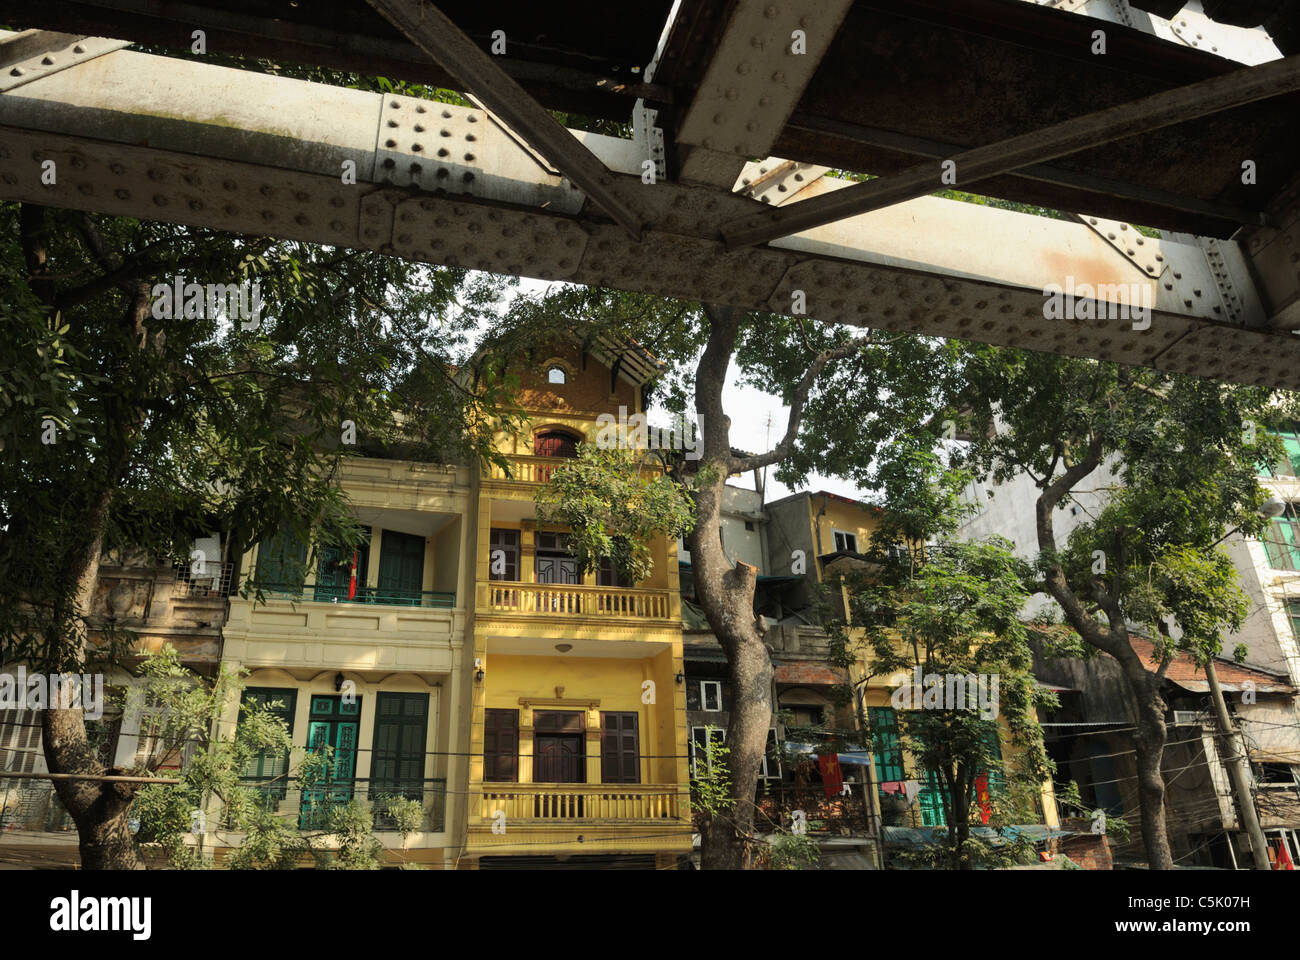 Asia, Vietnam, Hanoi. Hanoi old quarter. French colonial style housing next to the railway bridge. Stock Photo